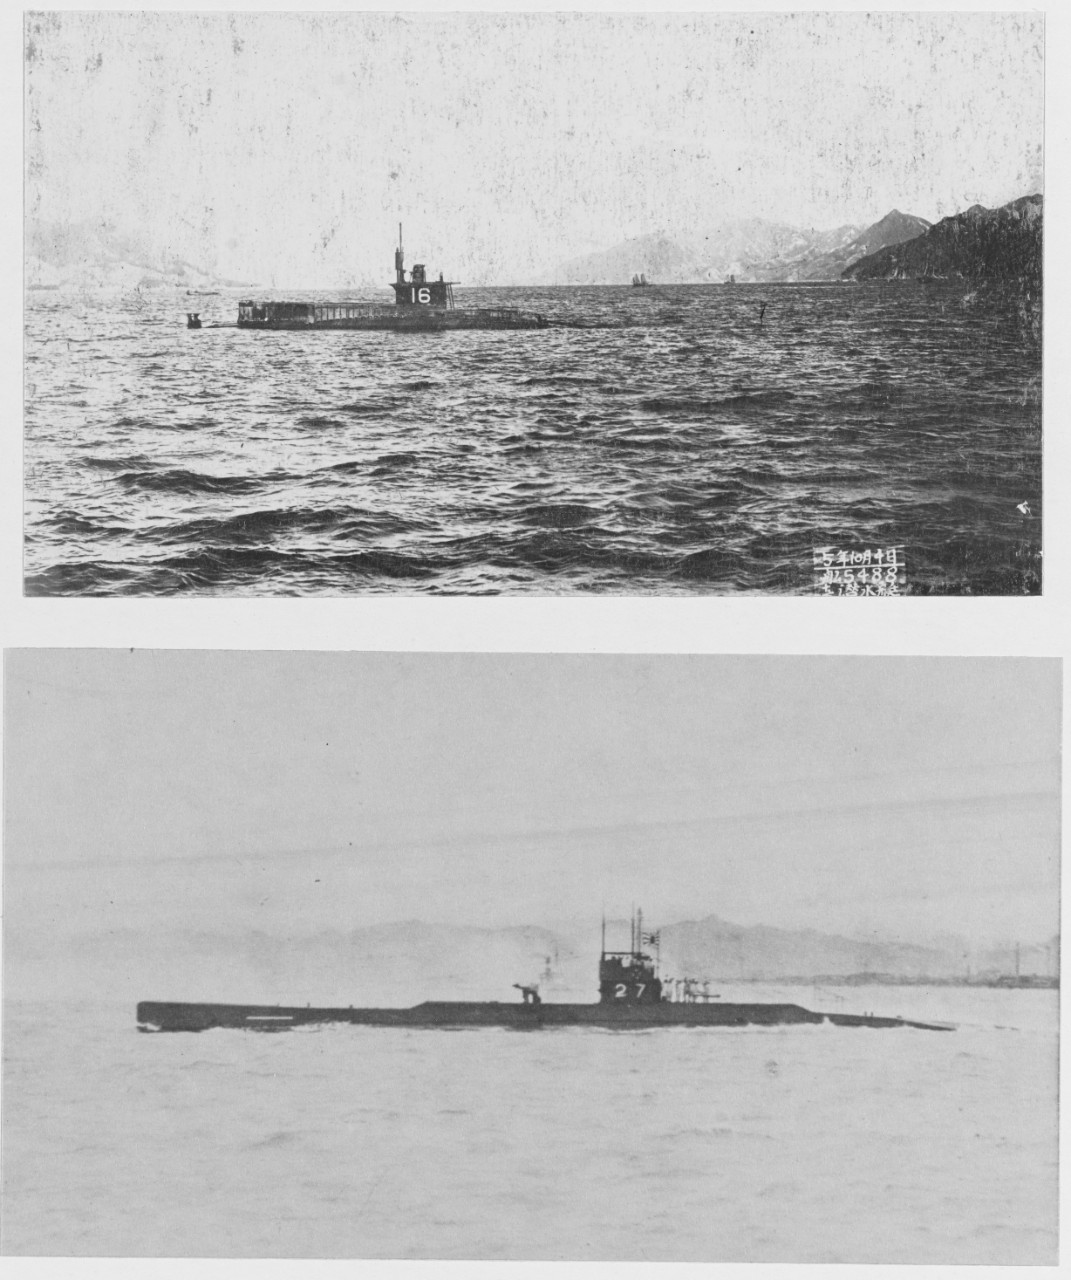 Japanese Submarines No. 16 and No. 27